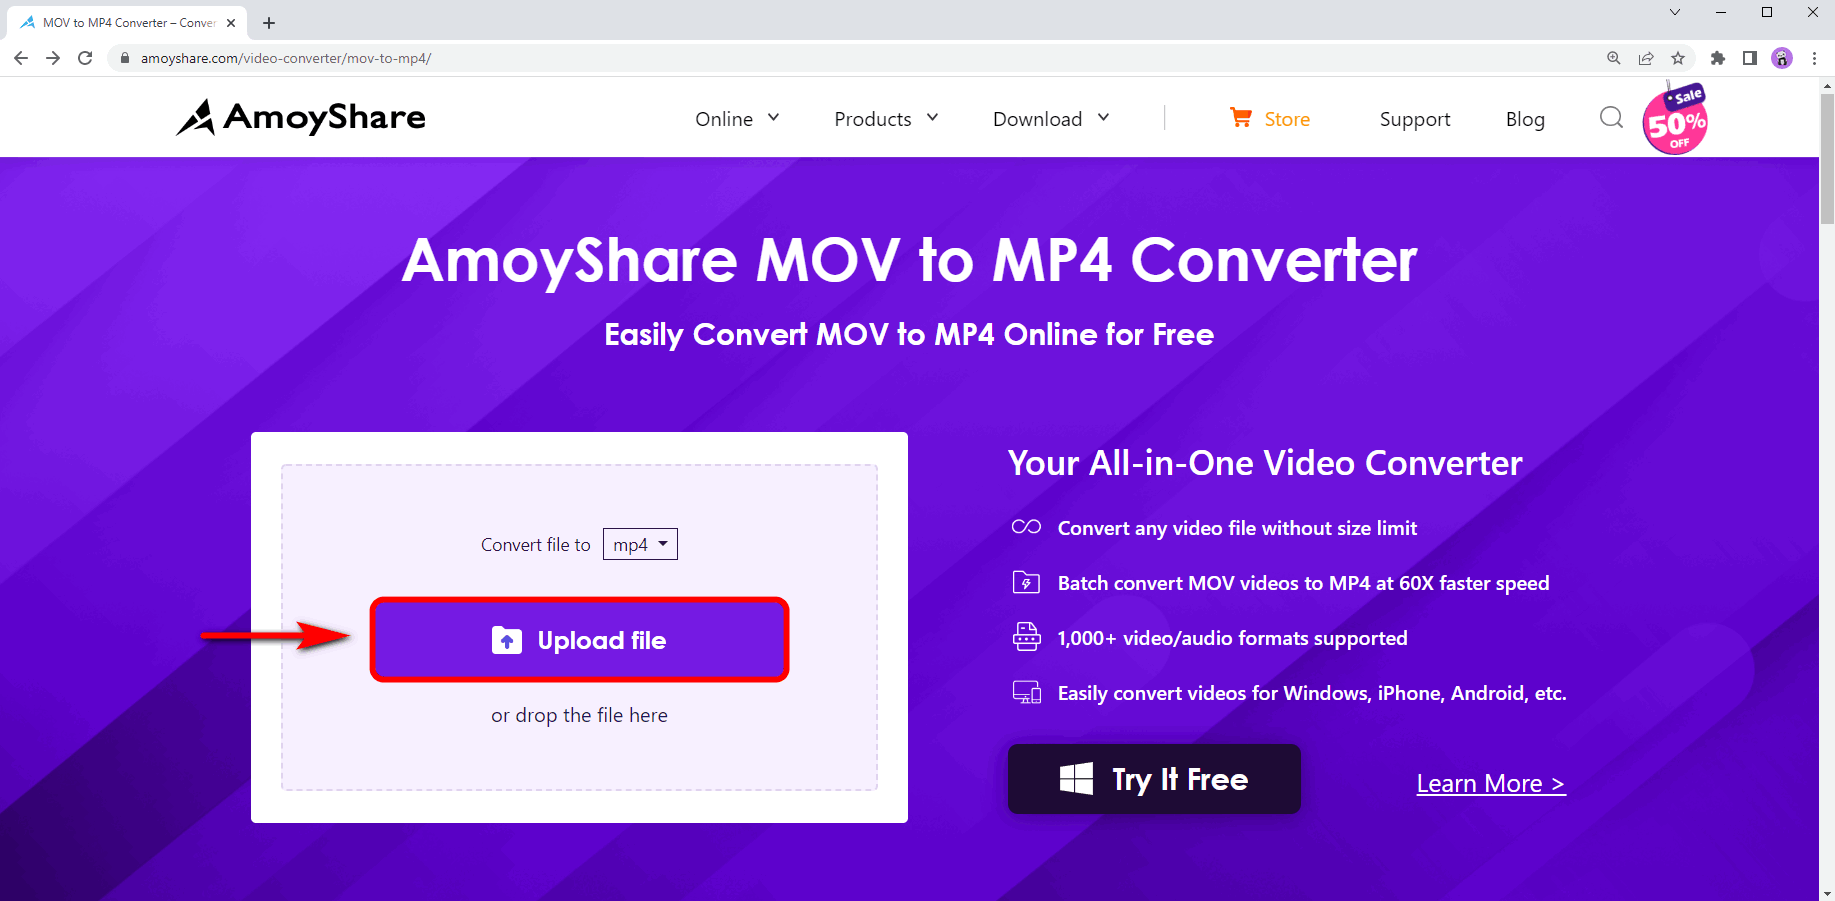 Upload the MOV file online